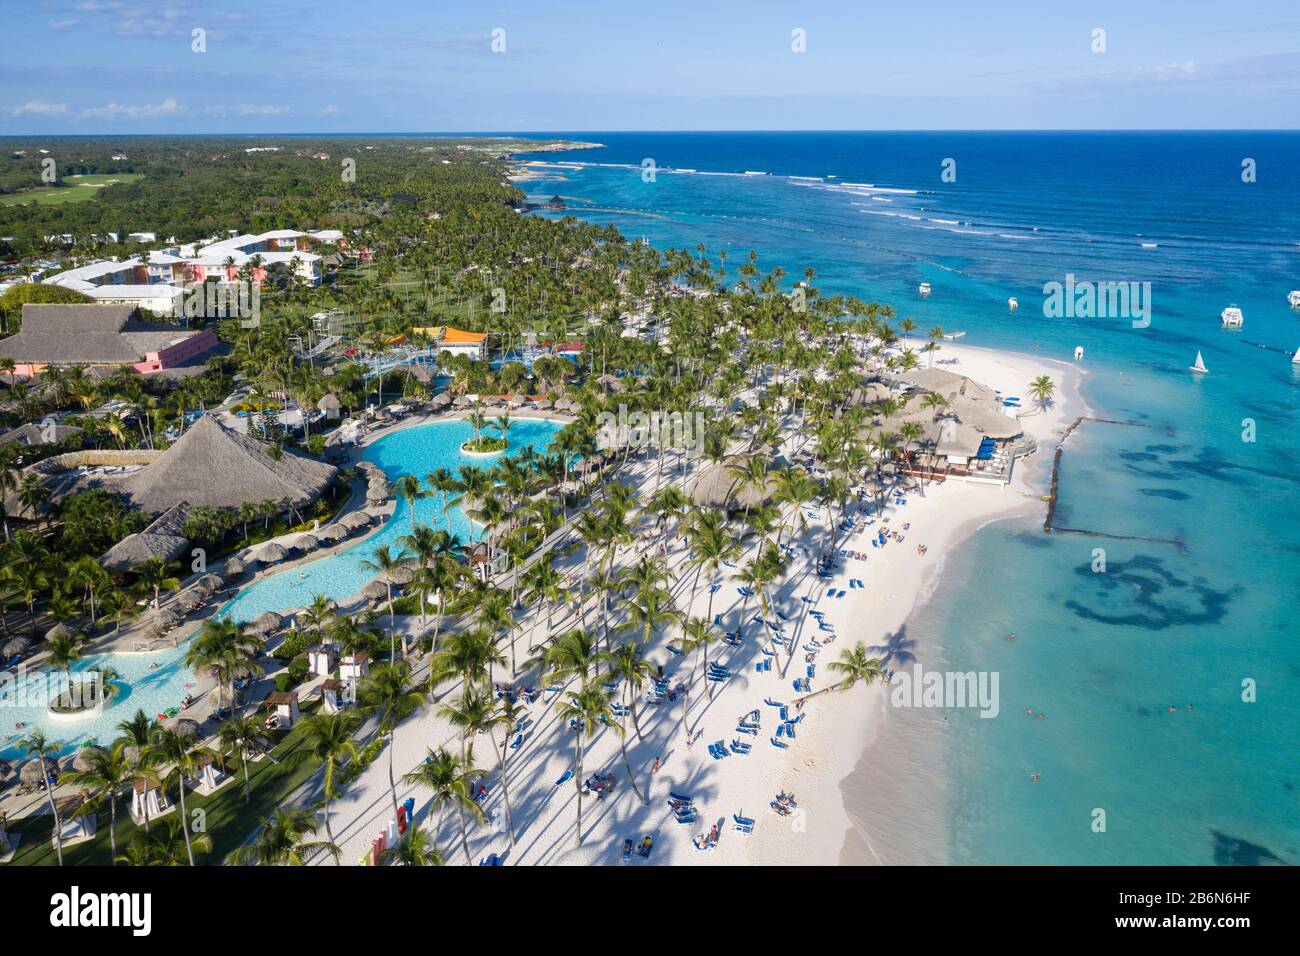 Vue aérienne sur la magnifique plage de sable blanc de Punta Cana, République dominicaine Banque D'Images